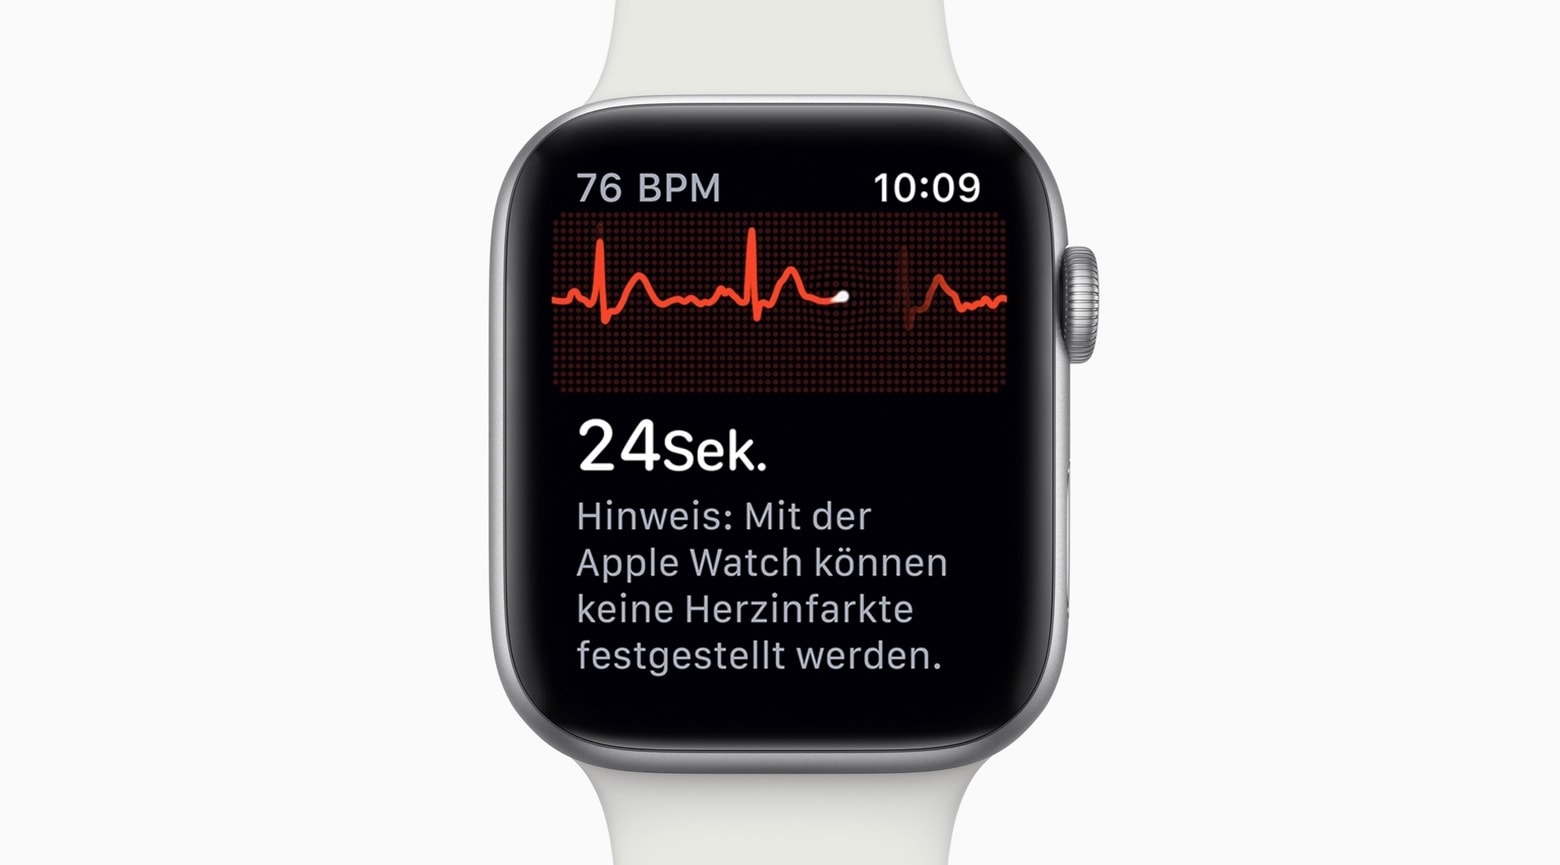 Apple Watch ECG debuted in Germany last week.